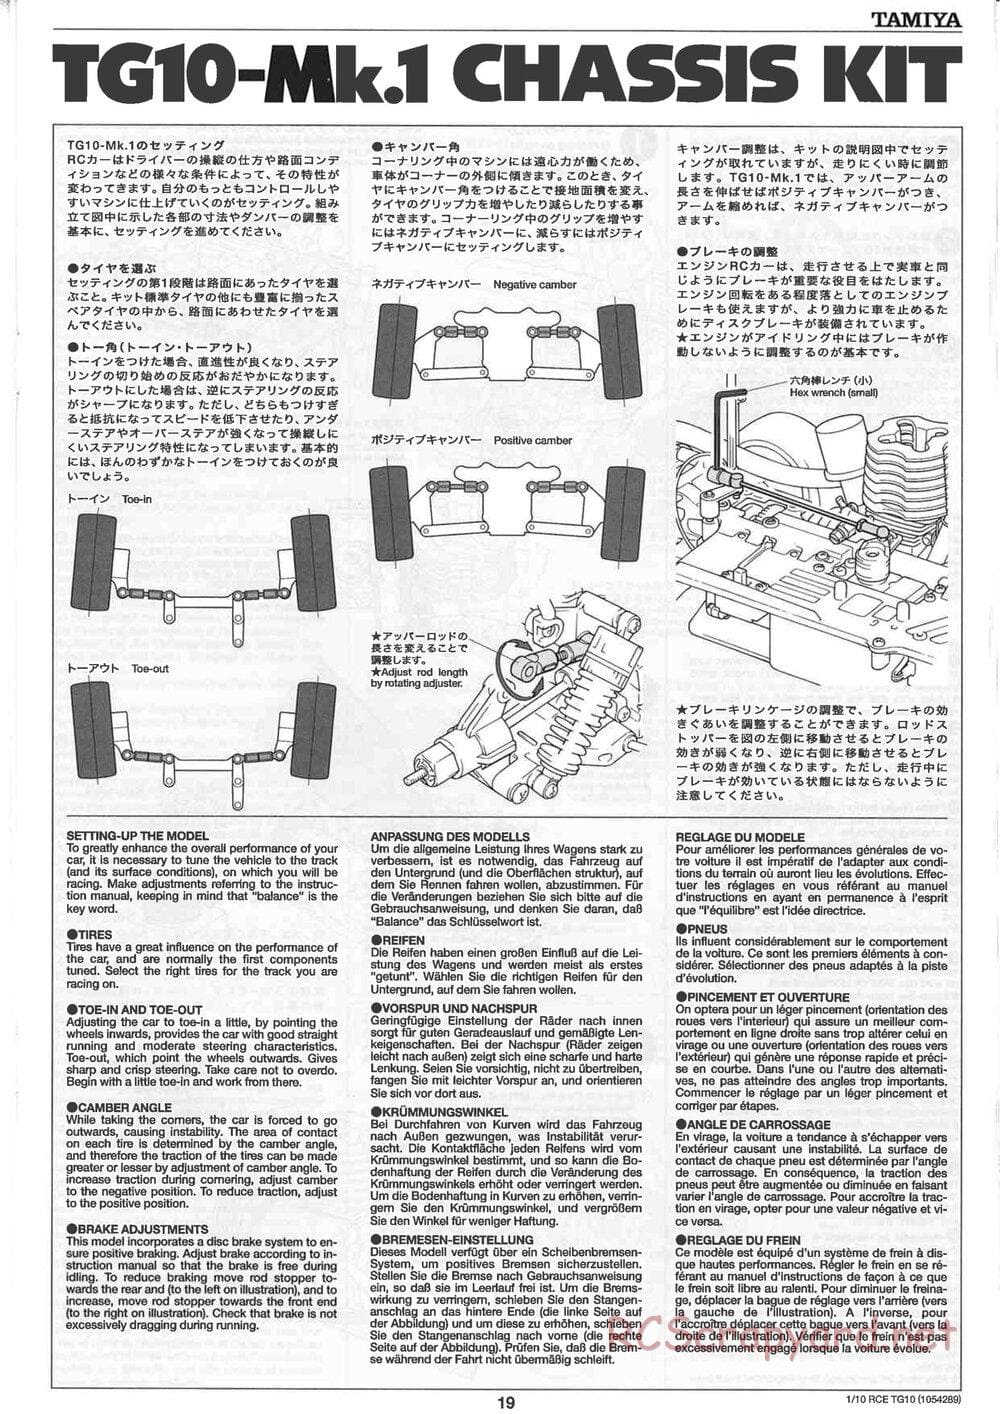 Tamiya - TG10 Mk.1 Chassis - Manual - Page 19